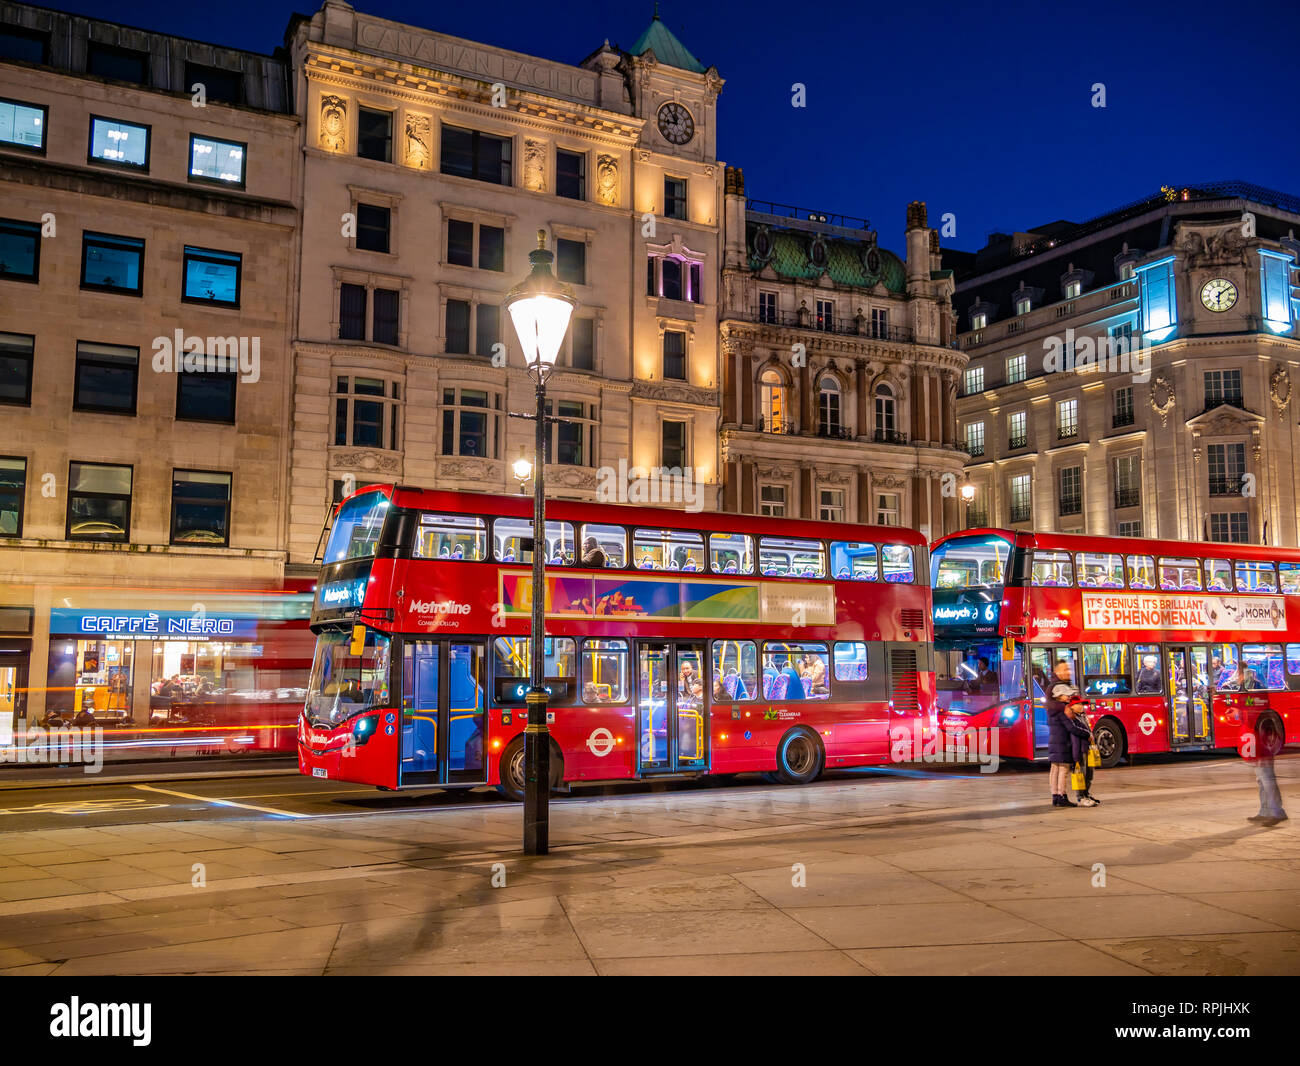 Londres, Inglaterra, Reino Unido - 14 de febrero de 2019: Tradicional autobús rojo de Londres de noche las luces de la calle cerca de la plaza Trafalgar, REINO UNIDO Foto de stock